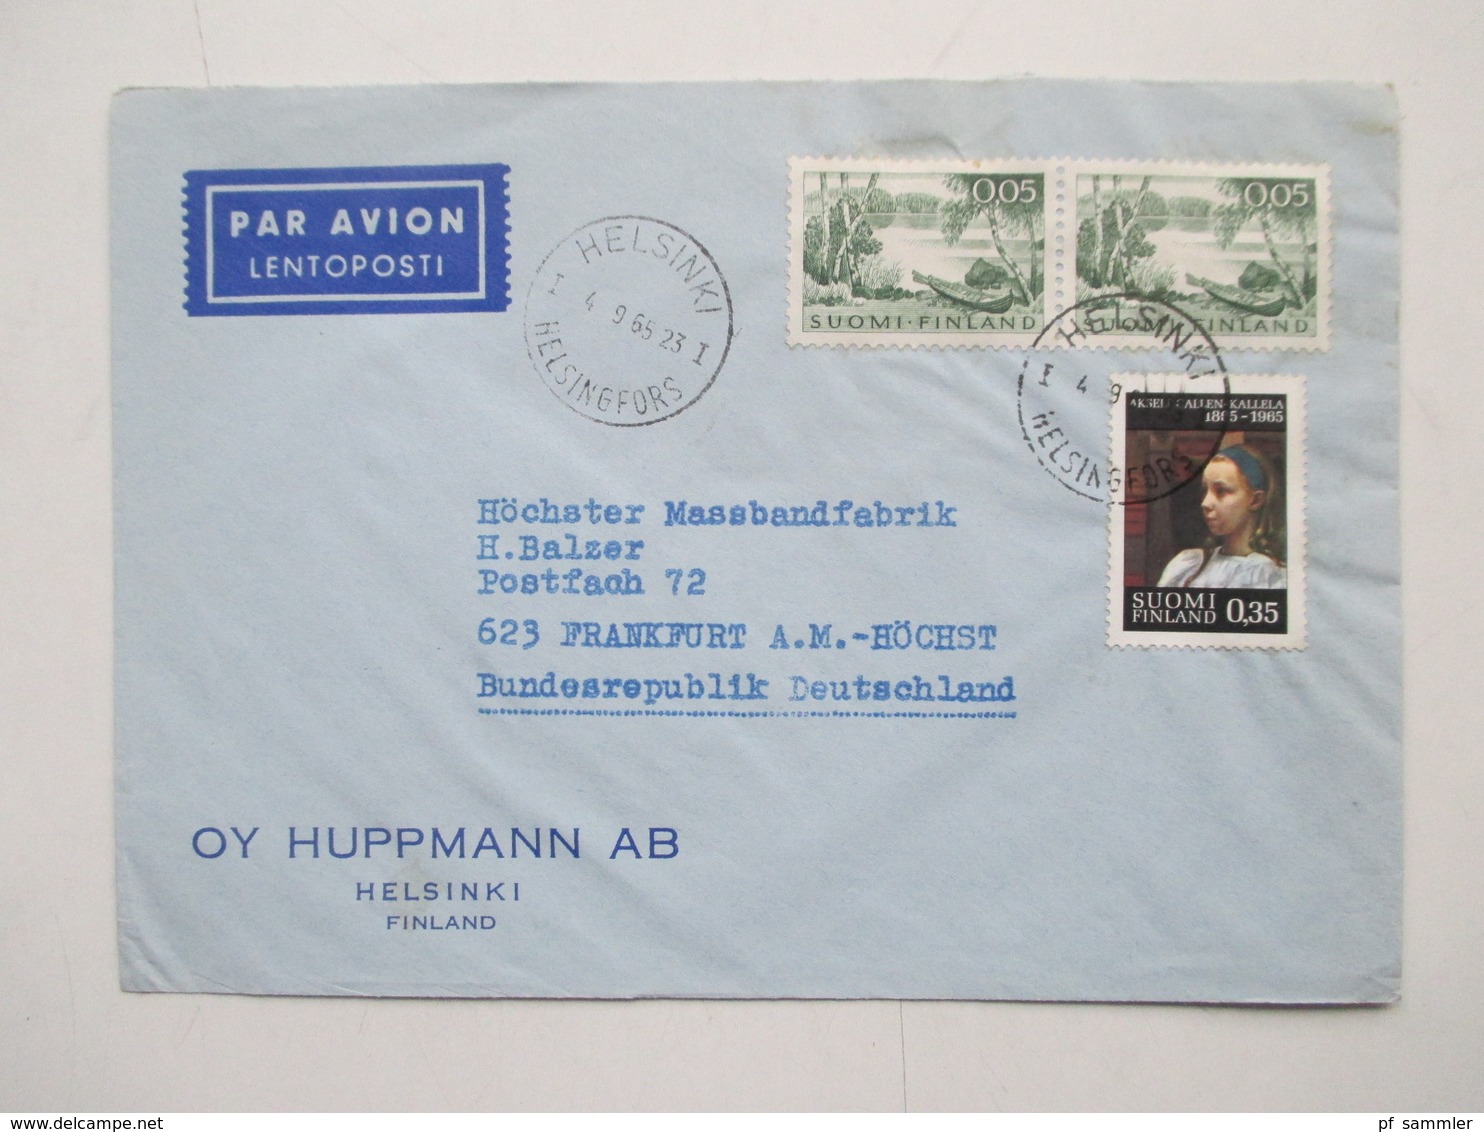 Finnland 1958 - 74 Luftpost Briefe 42 Stk. Firmen Korrespondenz auch Freimarke Nr. 505 Flugzeug mit Aufdruck usw.